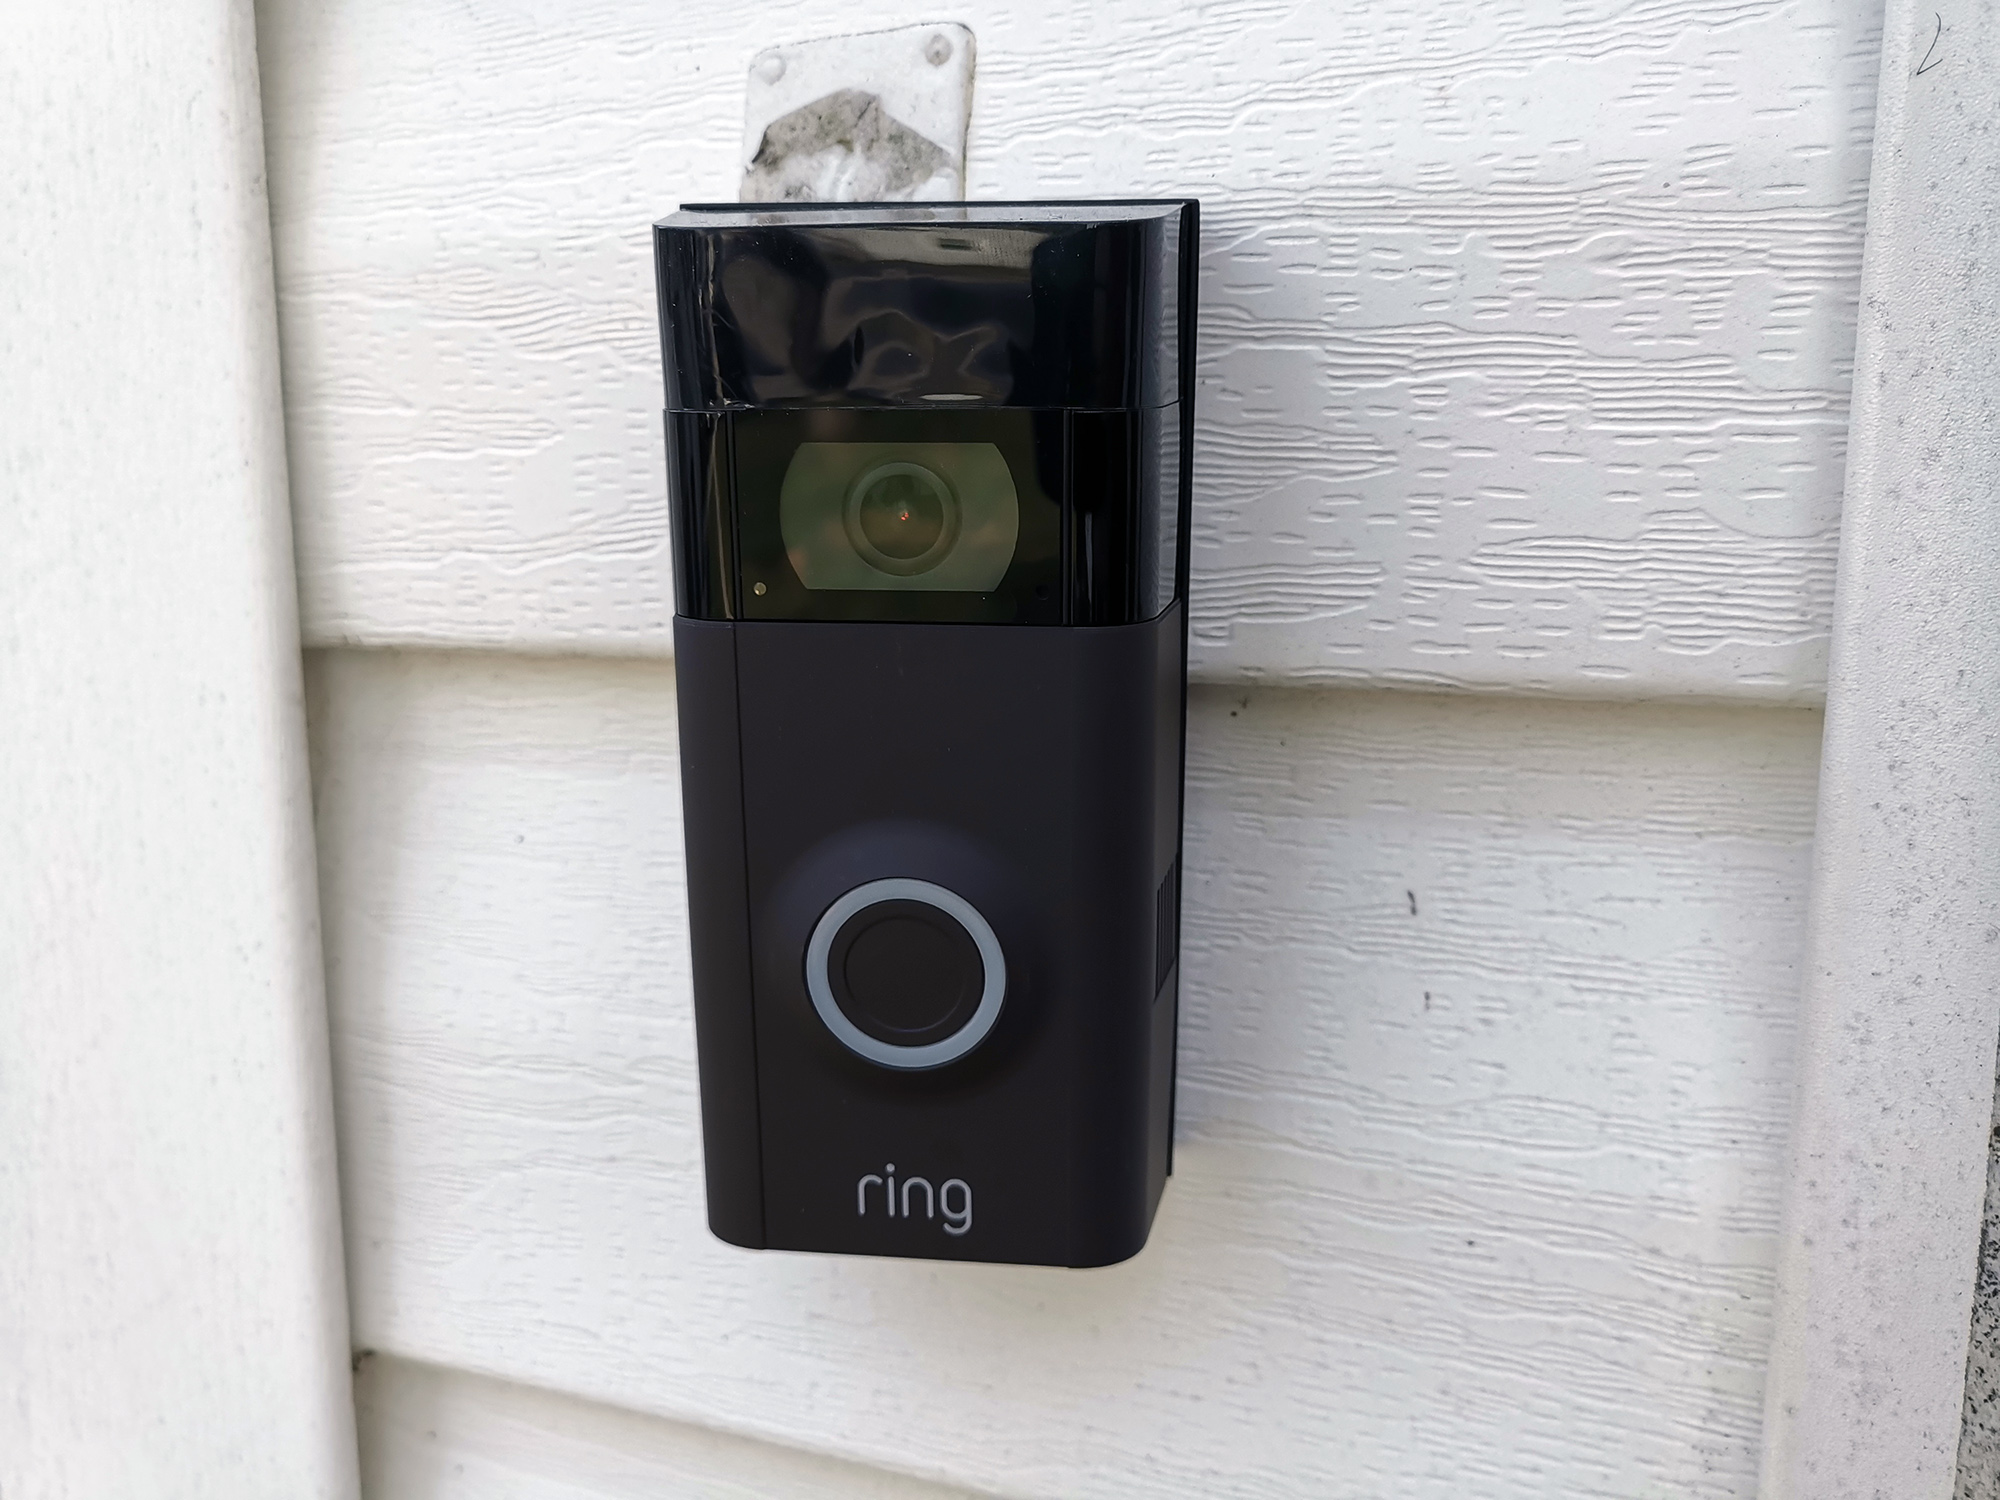 installation of ring 2 doorbell